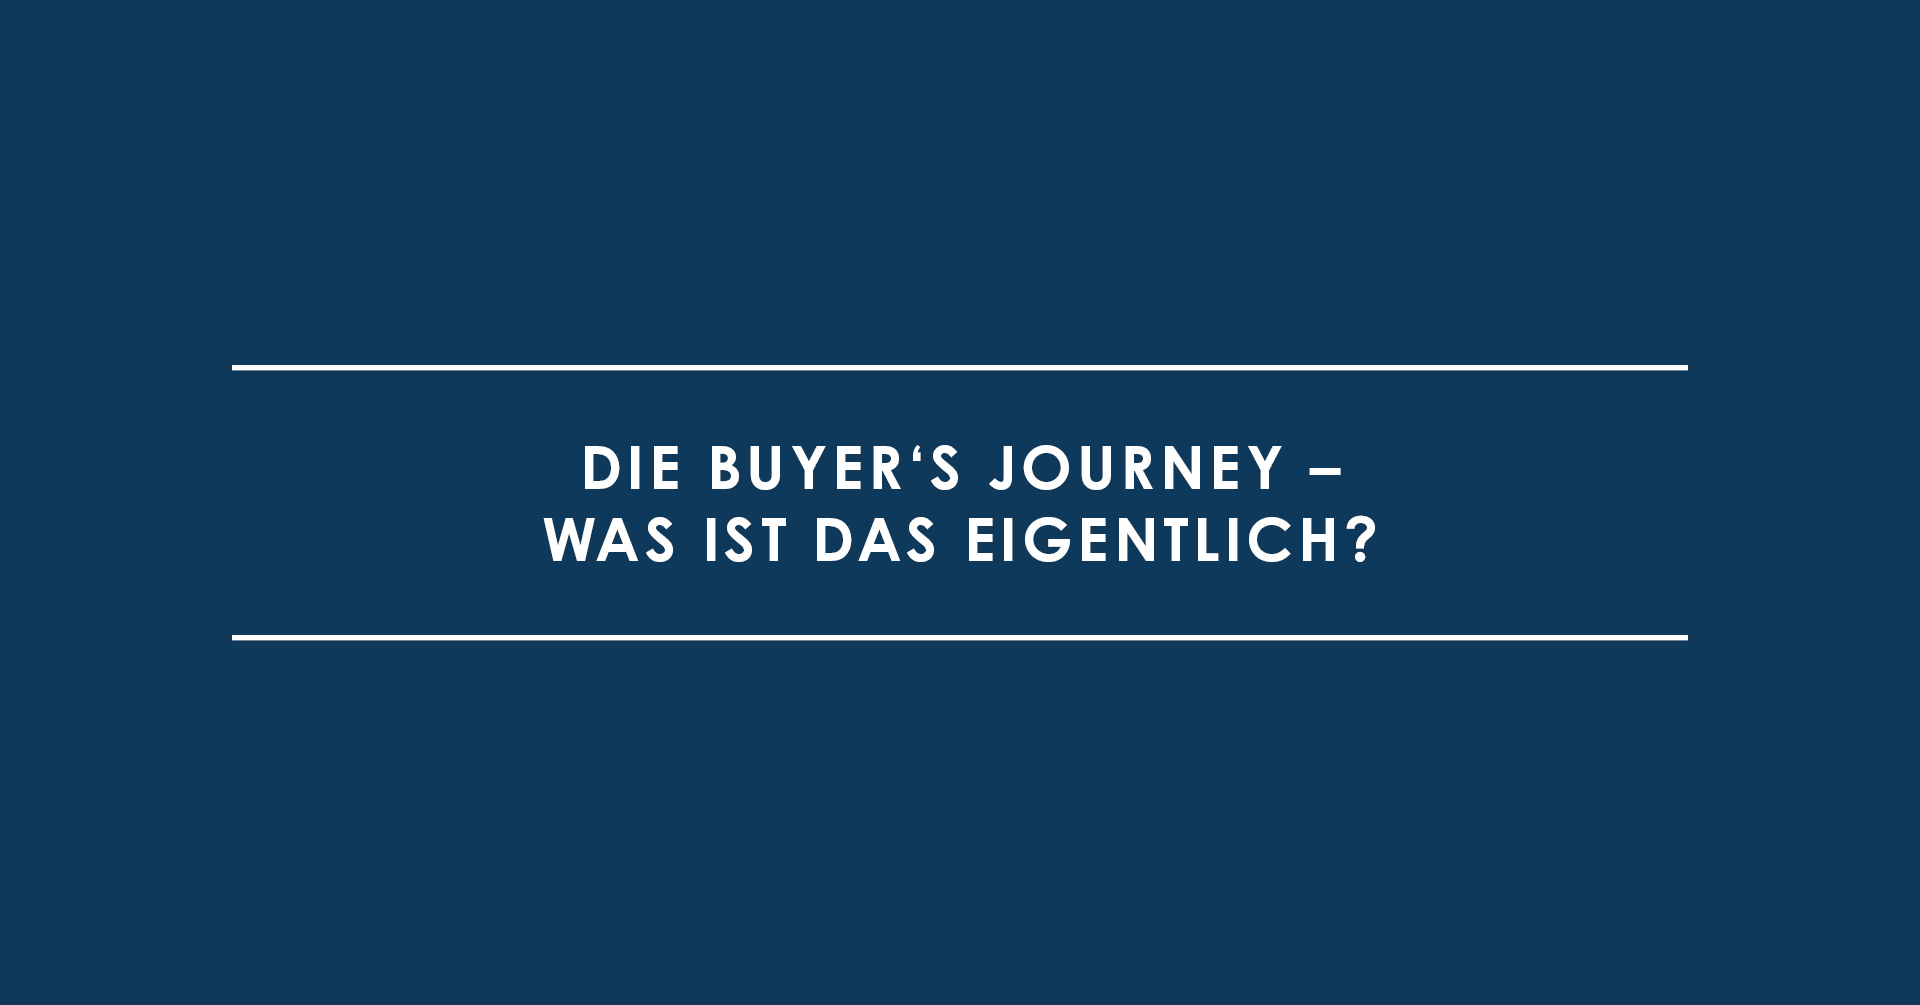 Die Buyer's Journey – was ist das eigentlich?